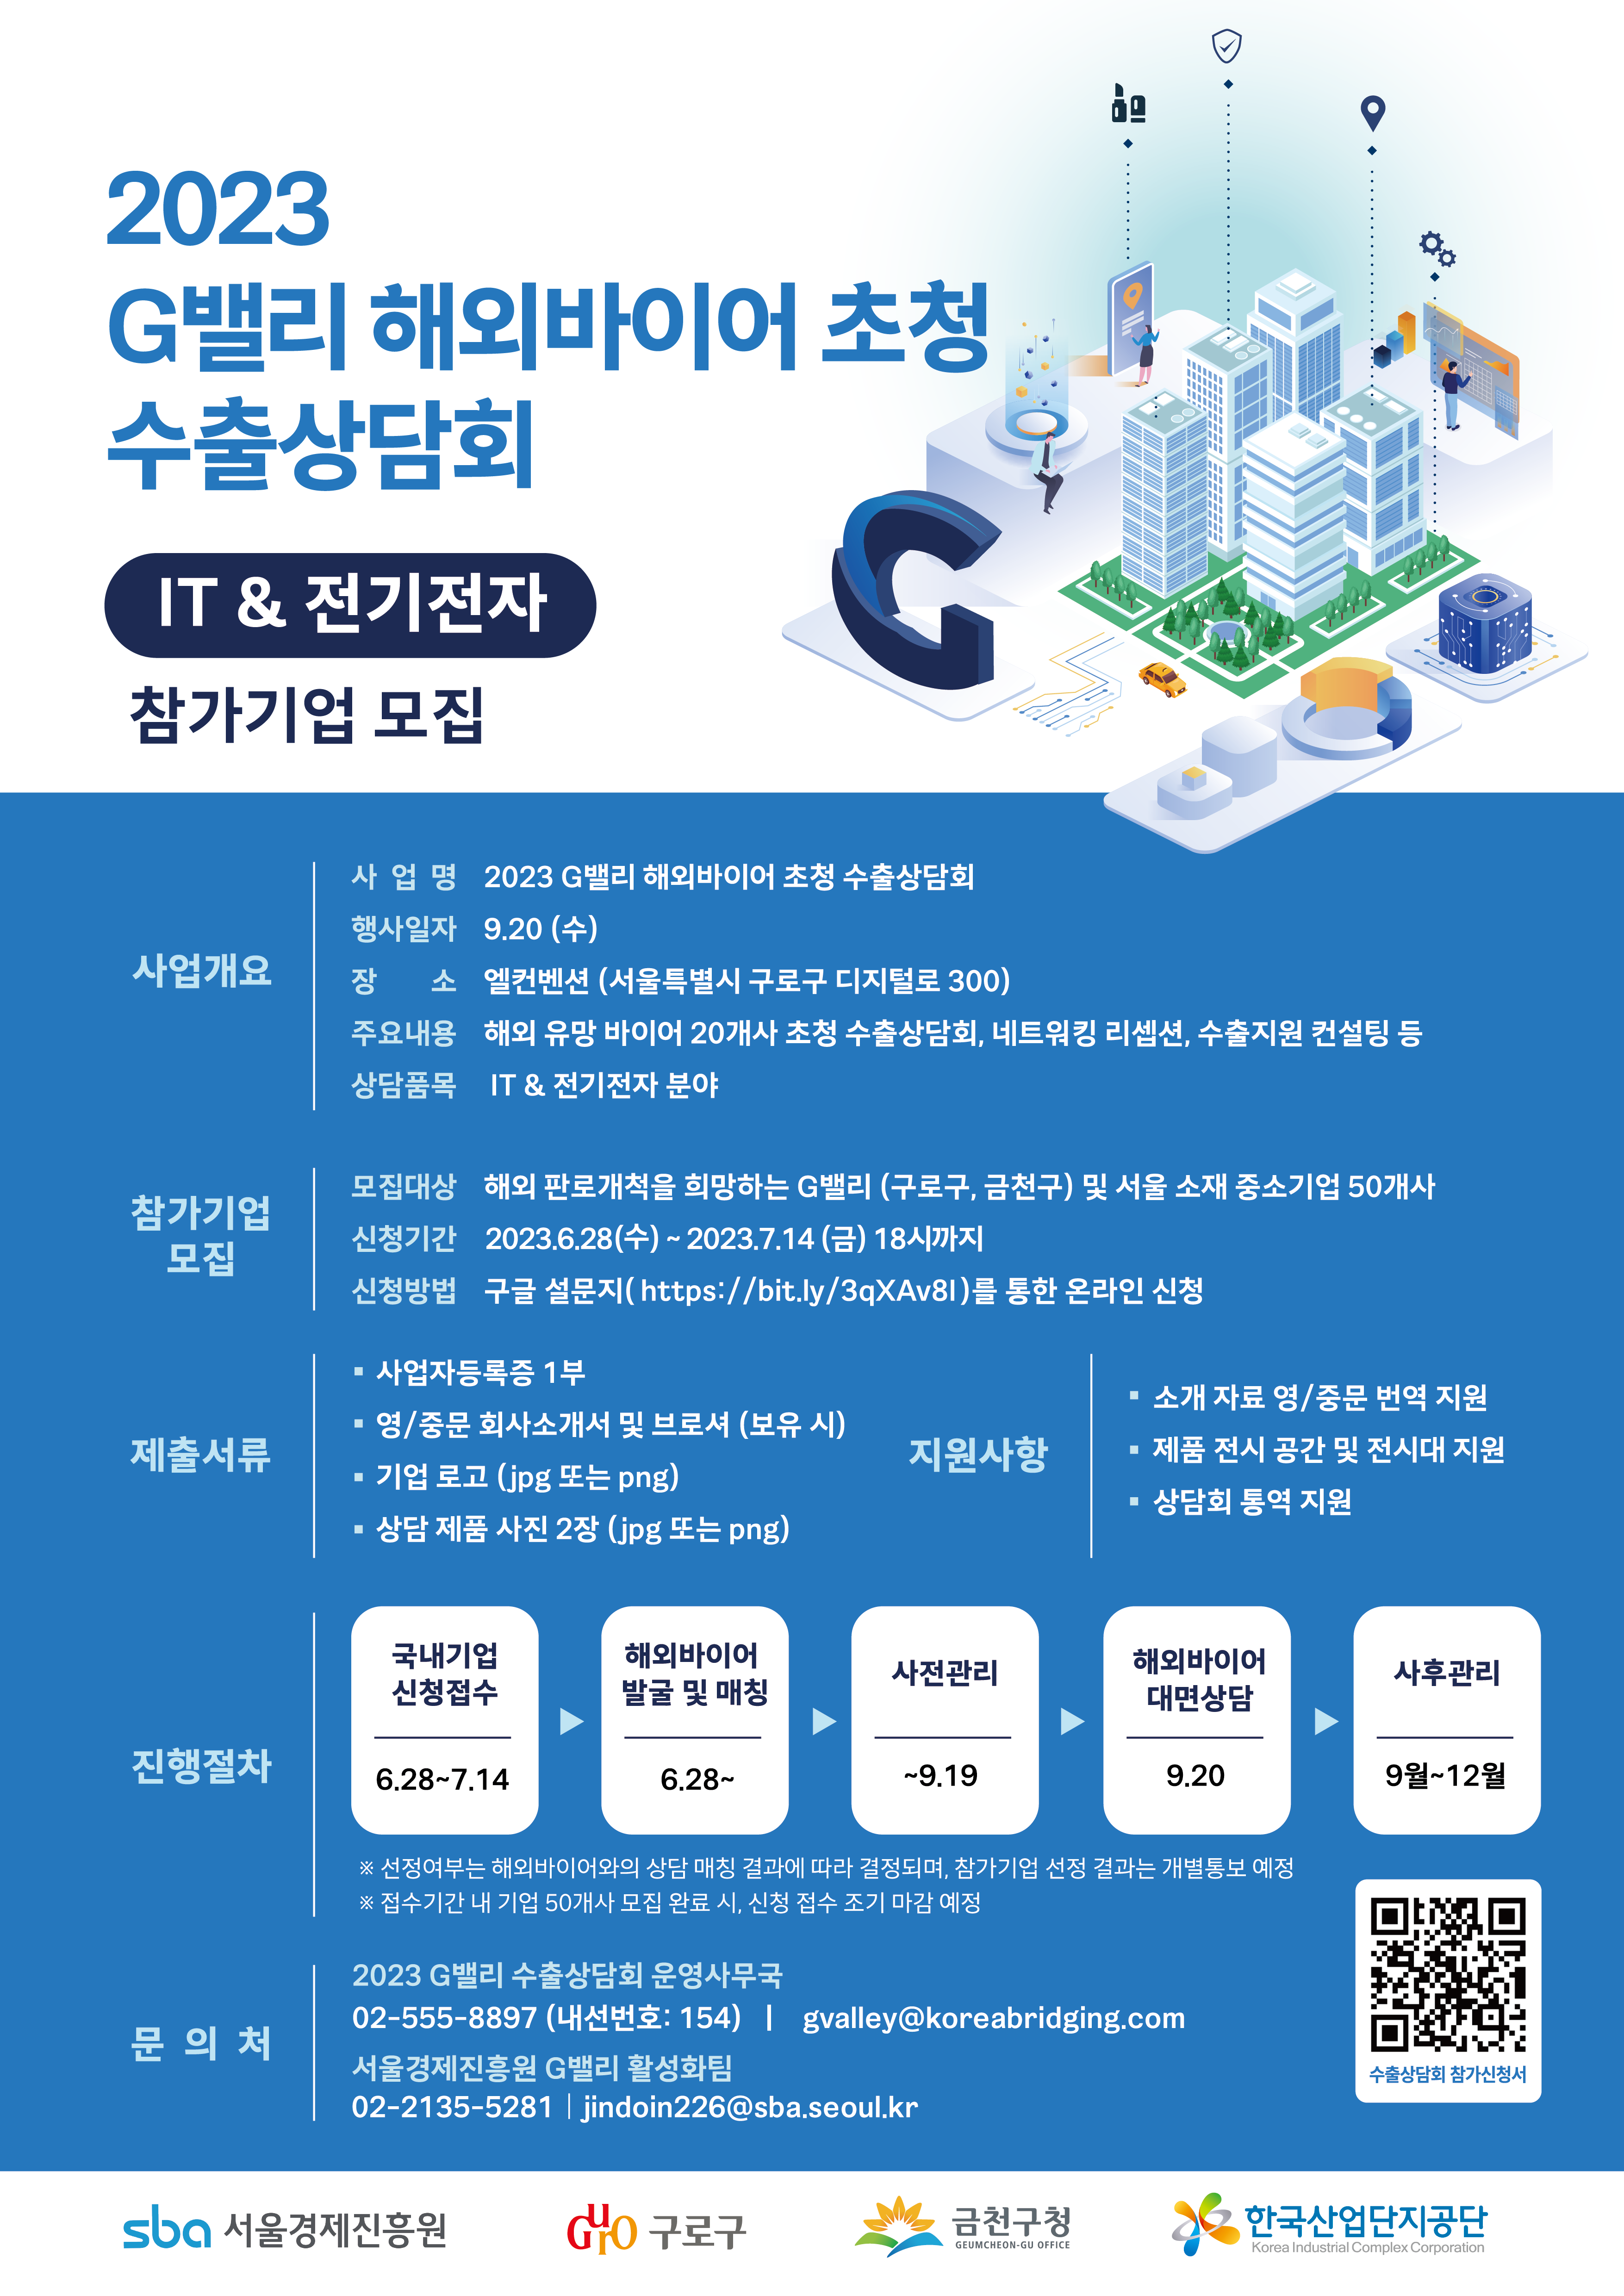 2023 G밸리 해외바이어 초청 수출상담회(IT전기전자) 참가기업 모집 포스터